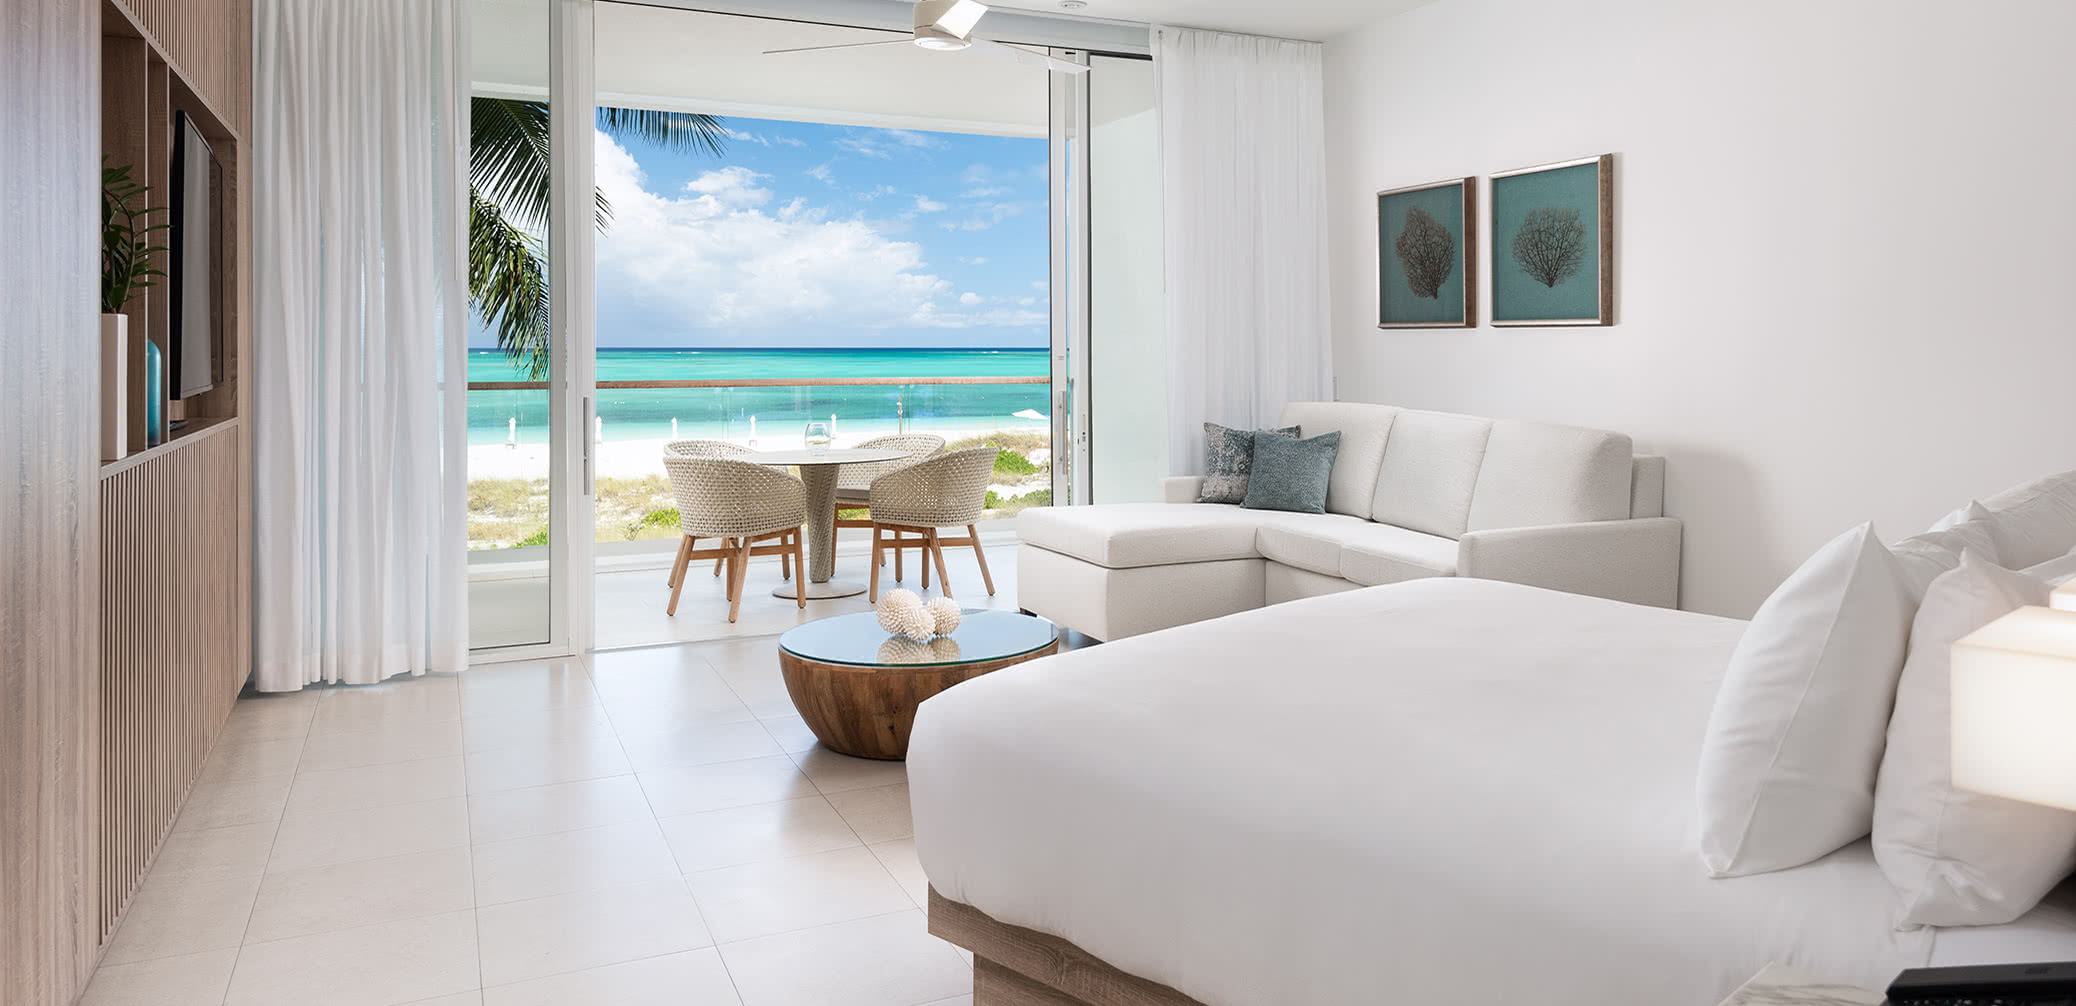 Review: Wymara Resort & Villas, Turks & Caicos